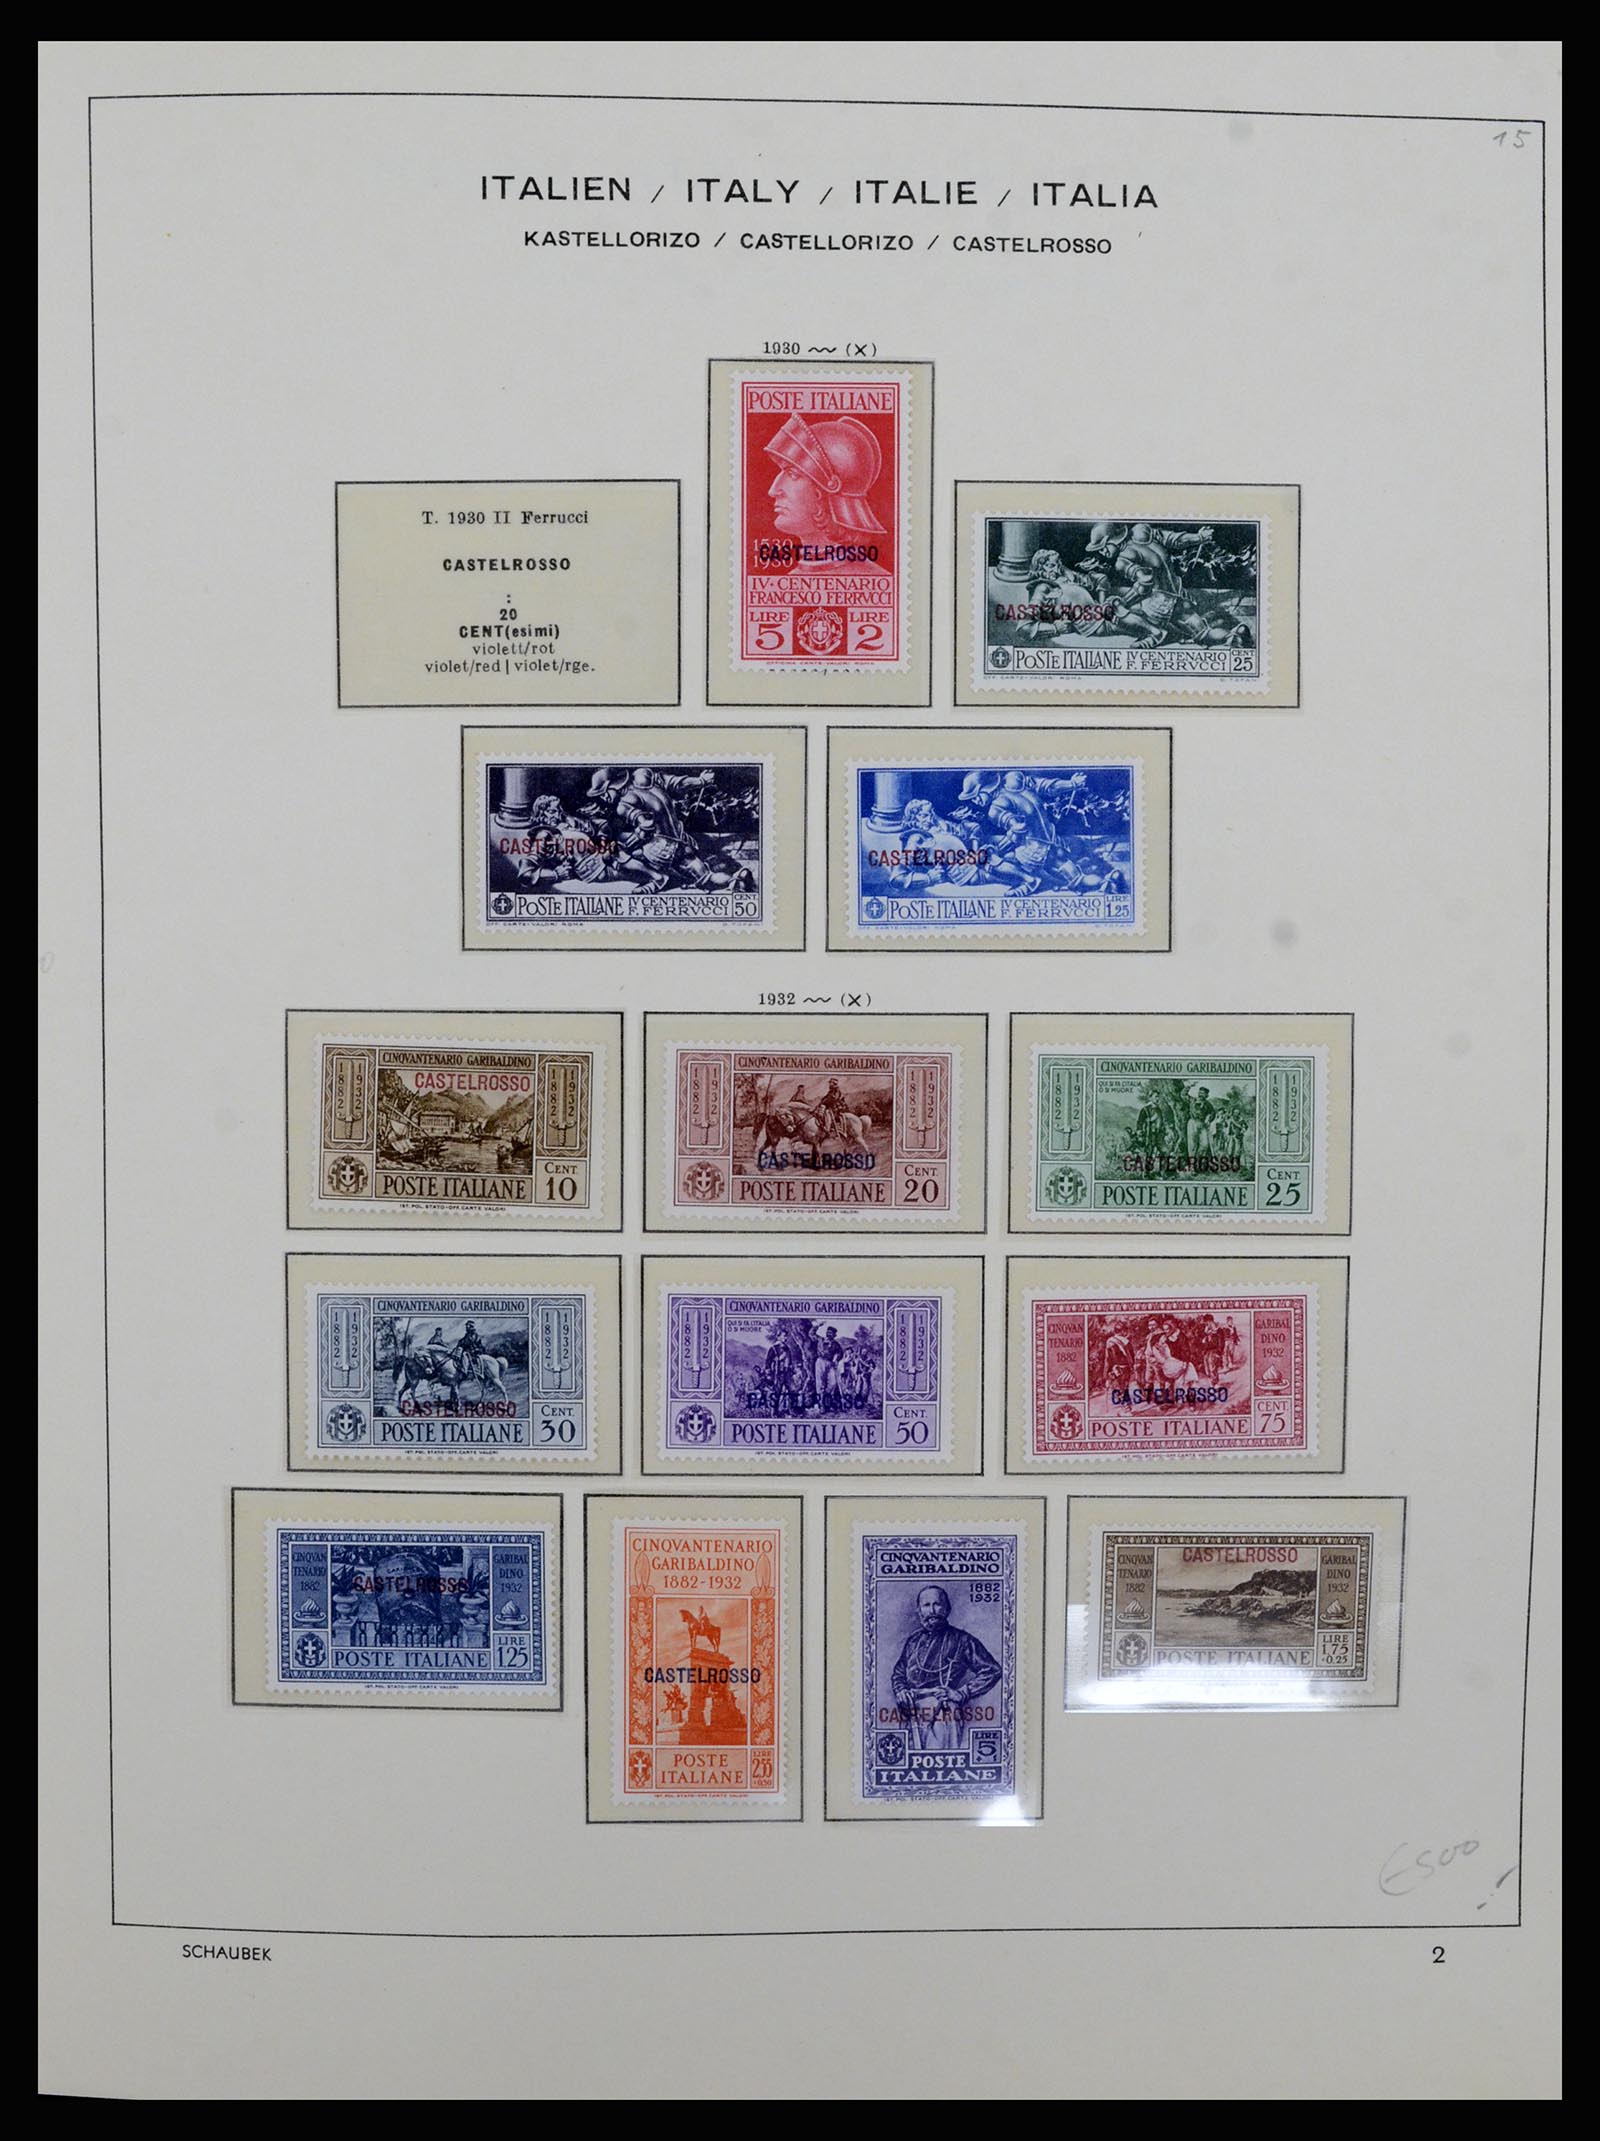 36577 002 - Stamp collection 36577 Italiaanse gebieden 1870-1940.